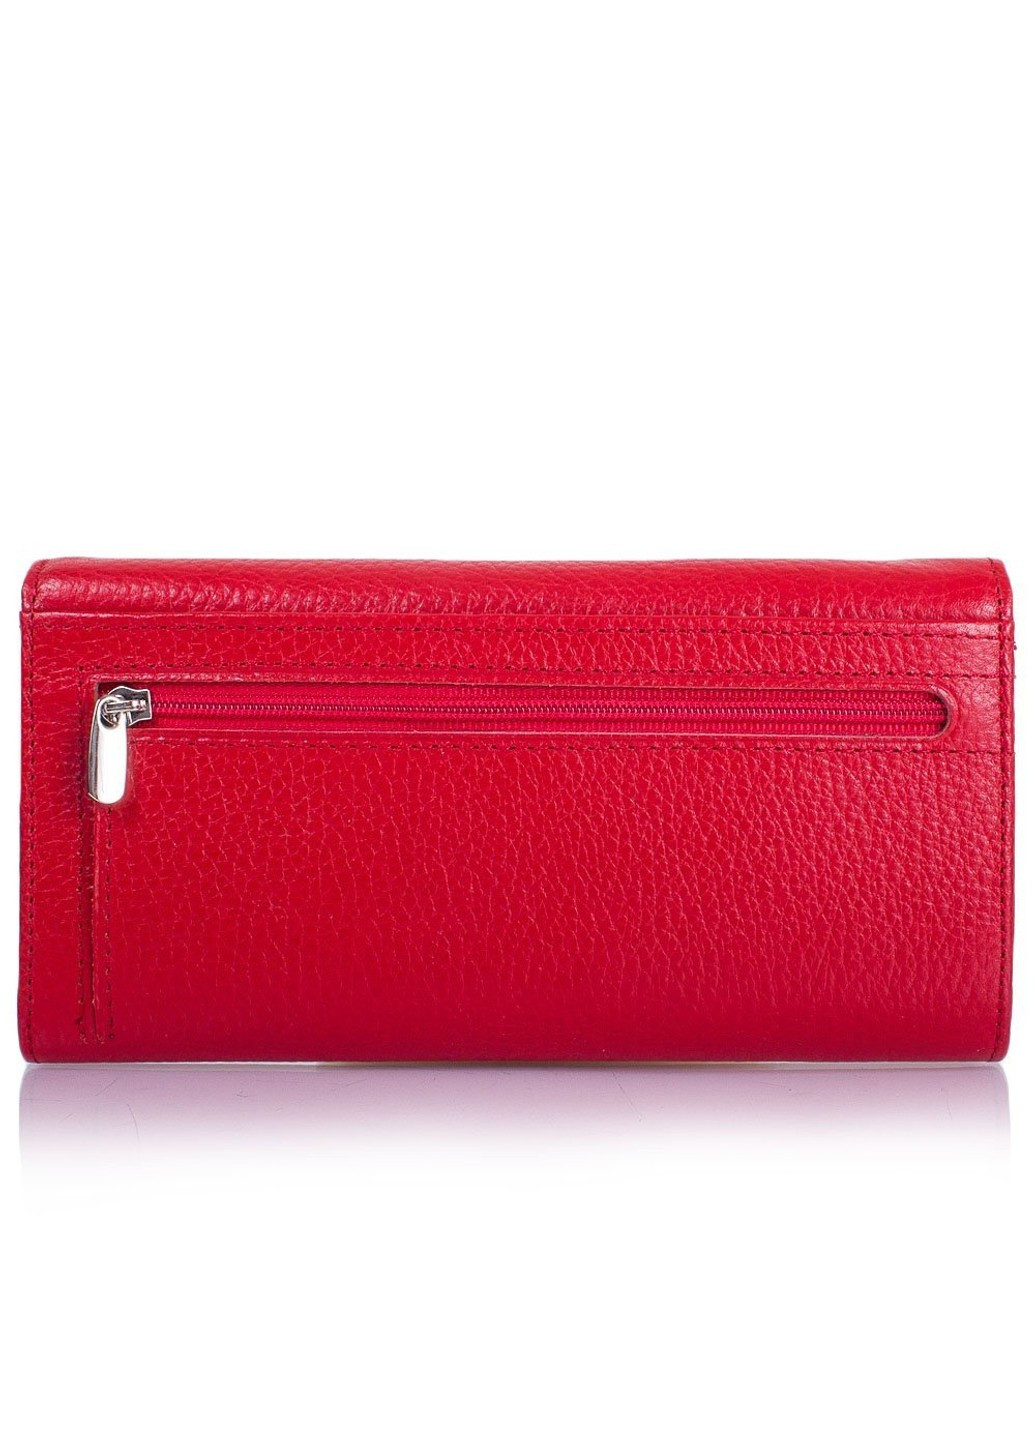 Женский красный кожаный кошелек SHI113-4-1FL Desisan (263279562)